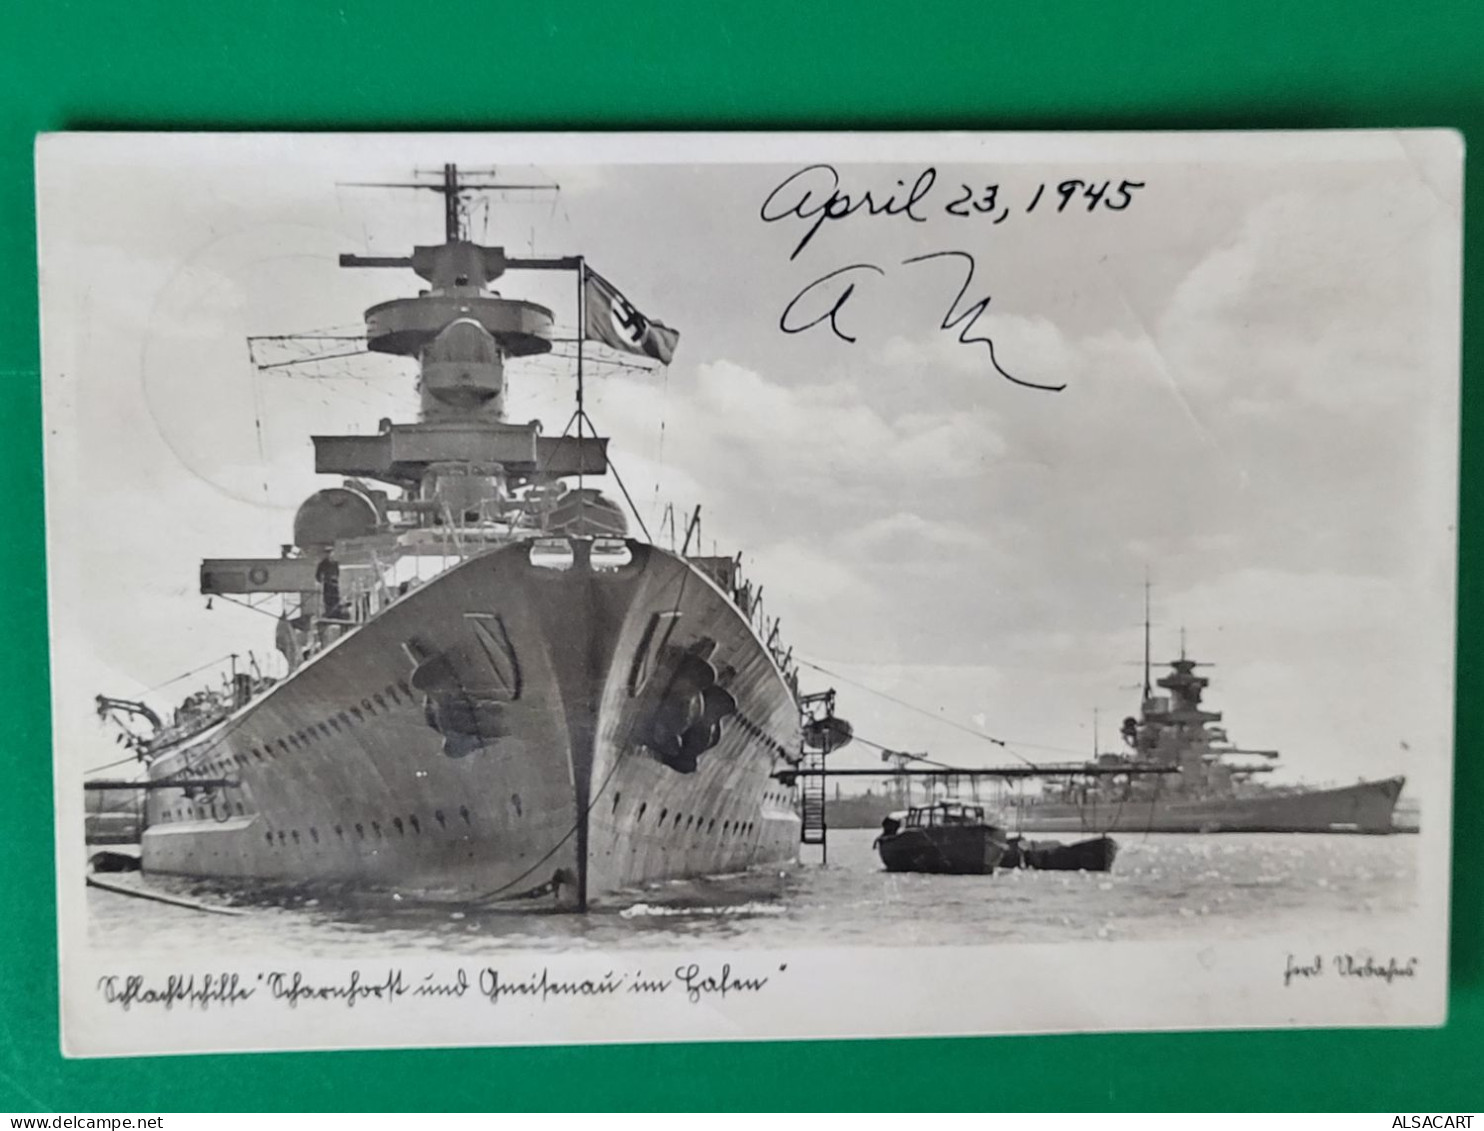 Carte Photo , Bateau De Guerre Allemand , Croix Gammé - Guerre